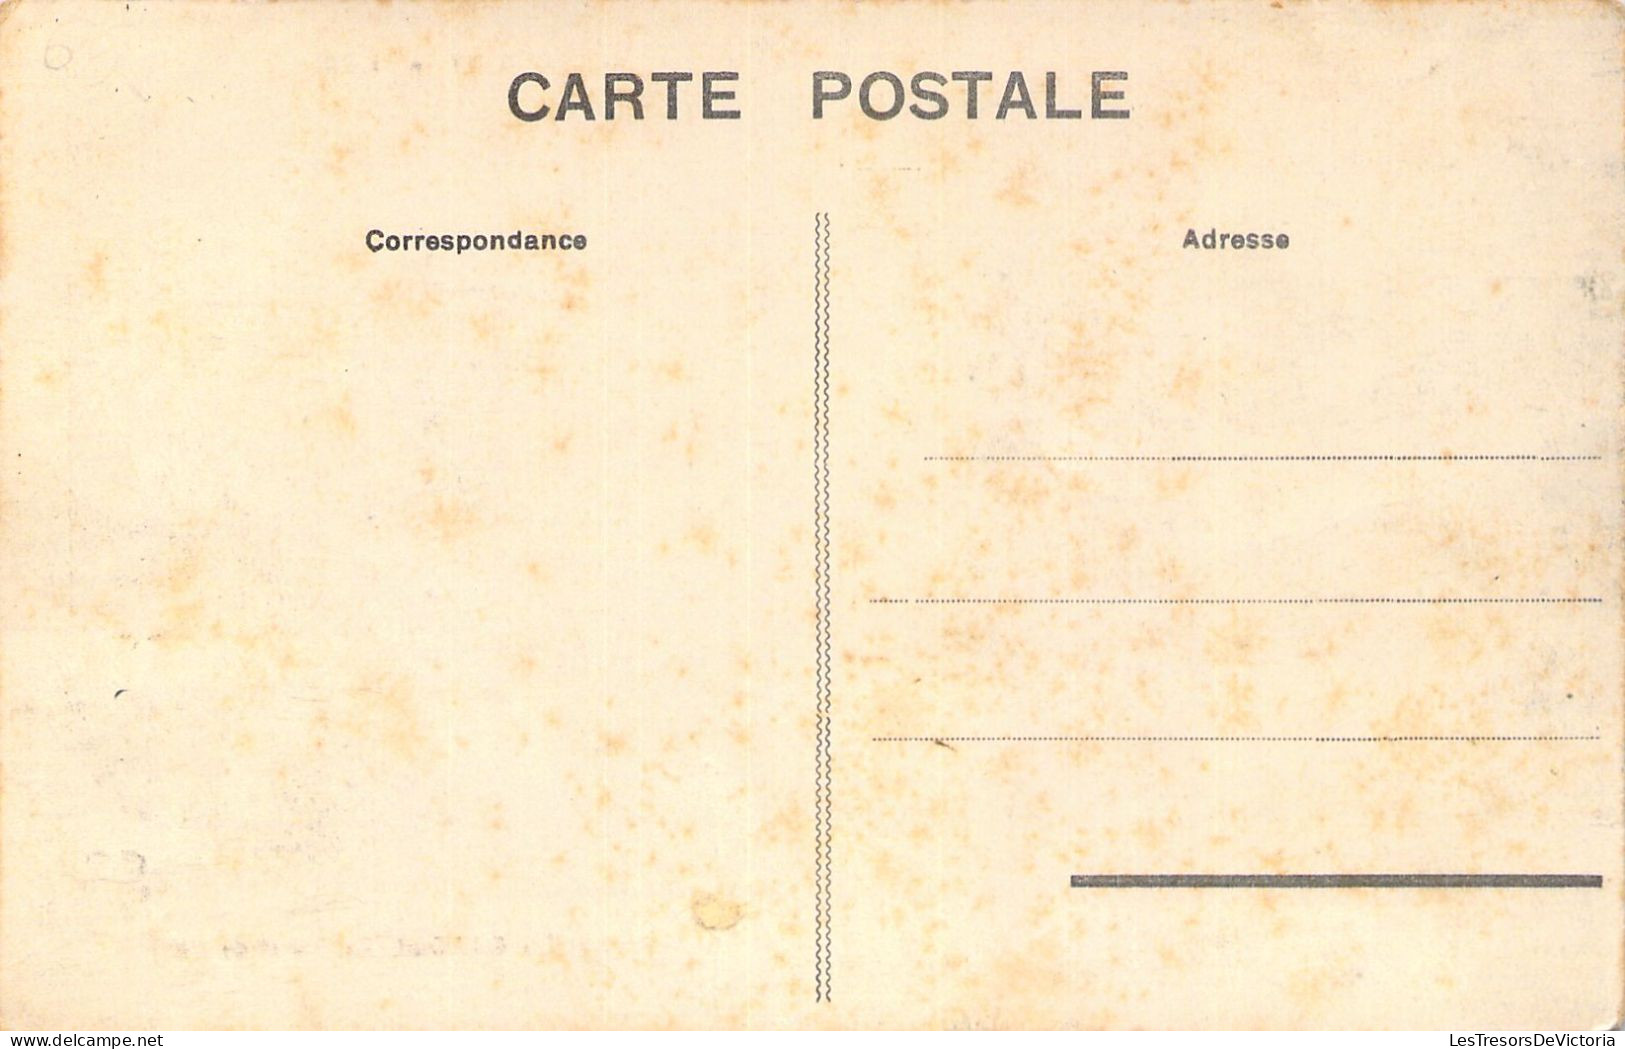 FRANCE - 65 - ARGELES GAZOST - L'Hôtel Du Parc - Carte Postale Ancienne - Argeles Gazost